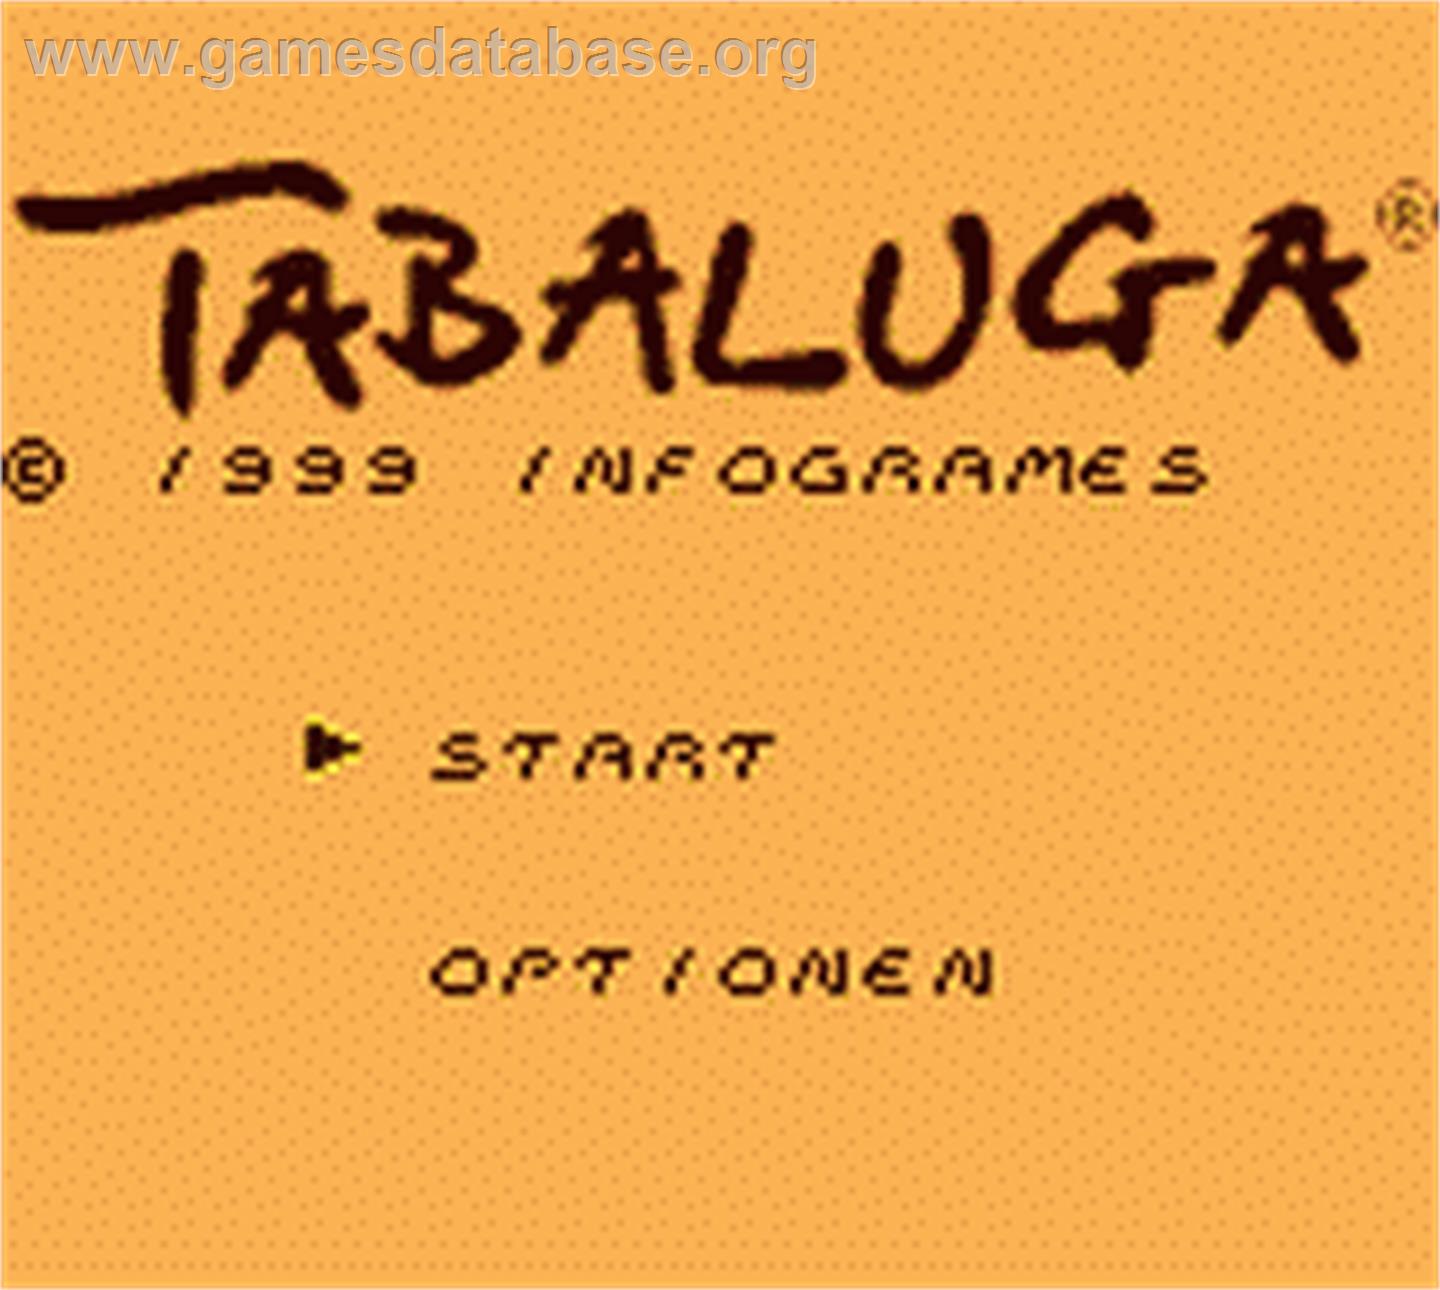 Tabaluga - Nintendo Game Boy Color - Artwork - Title Screen